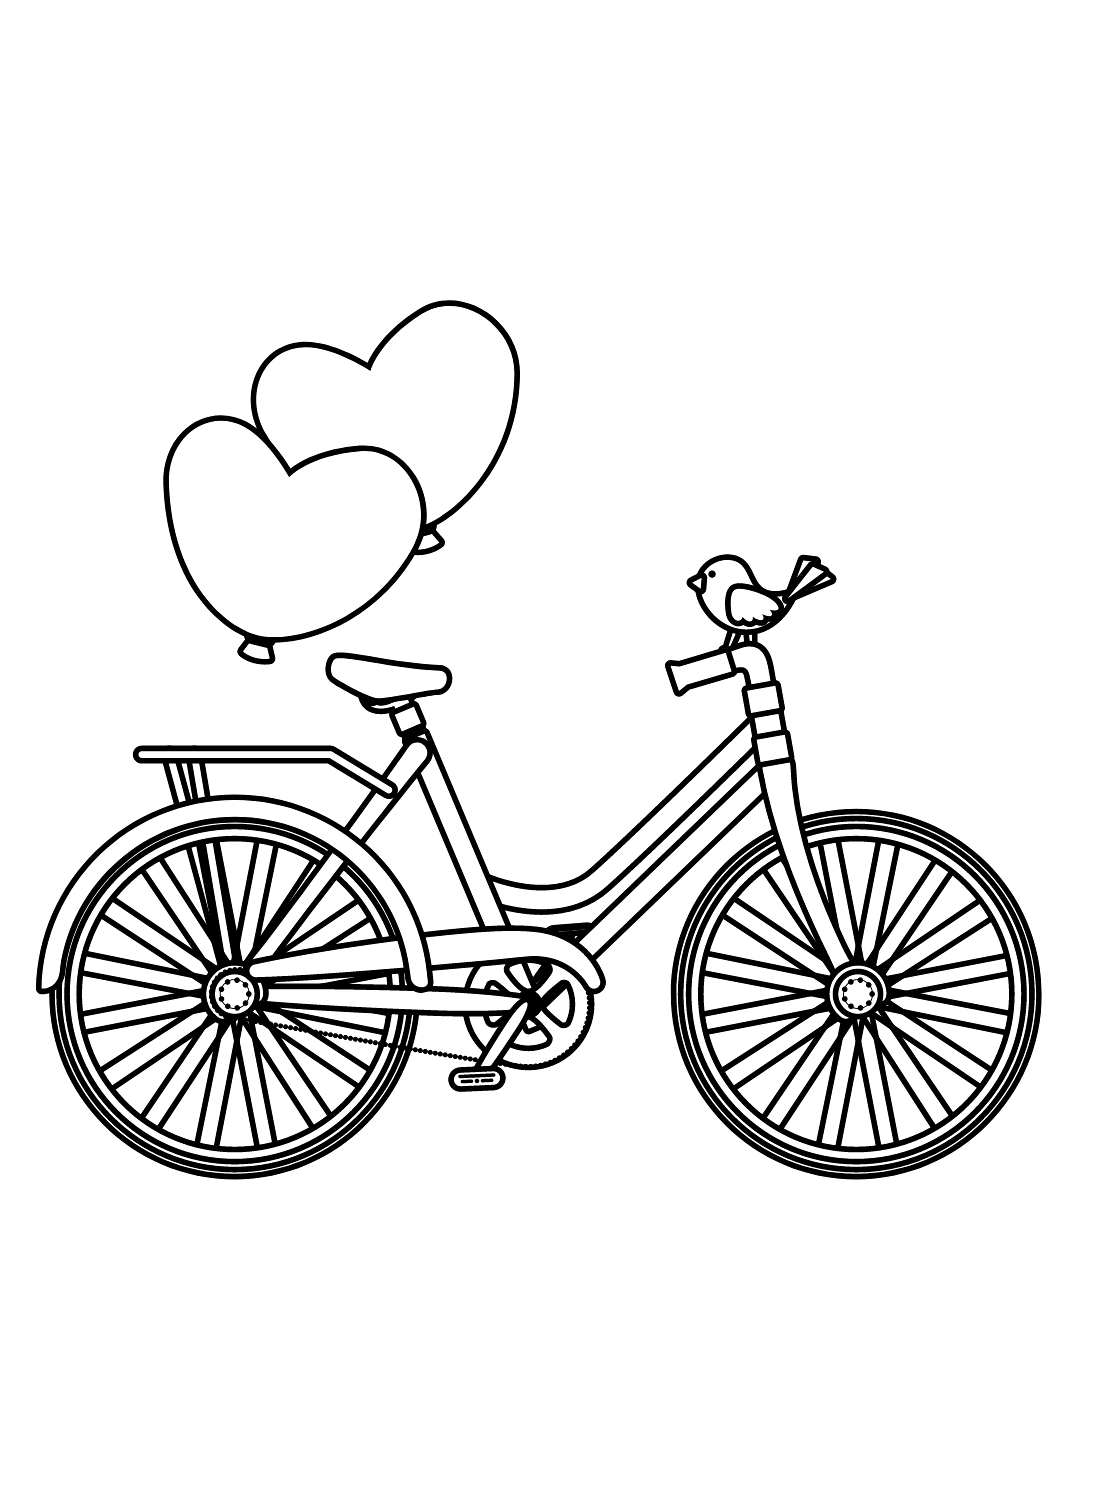 Bicicleta com balões de coração from Bicicleta